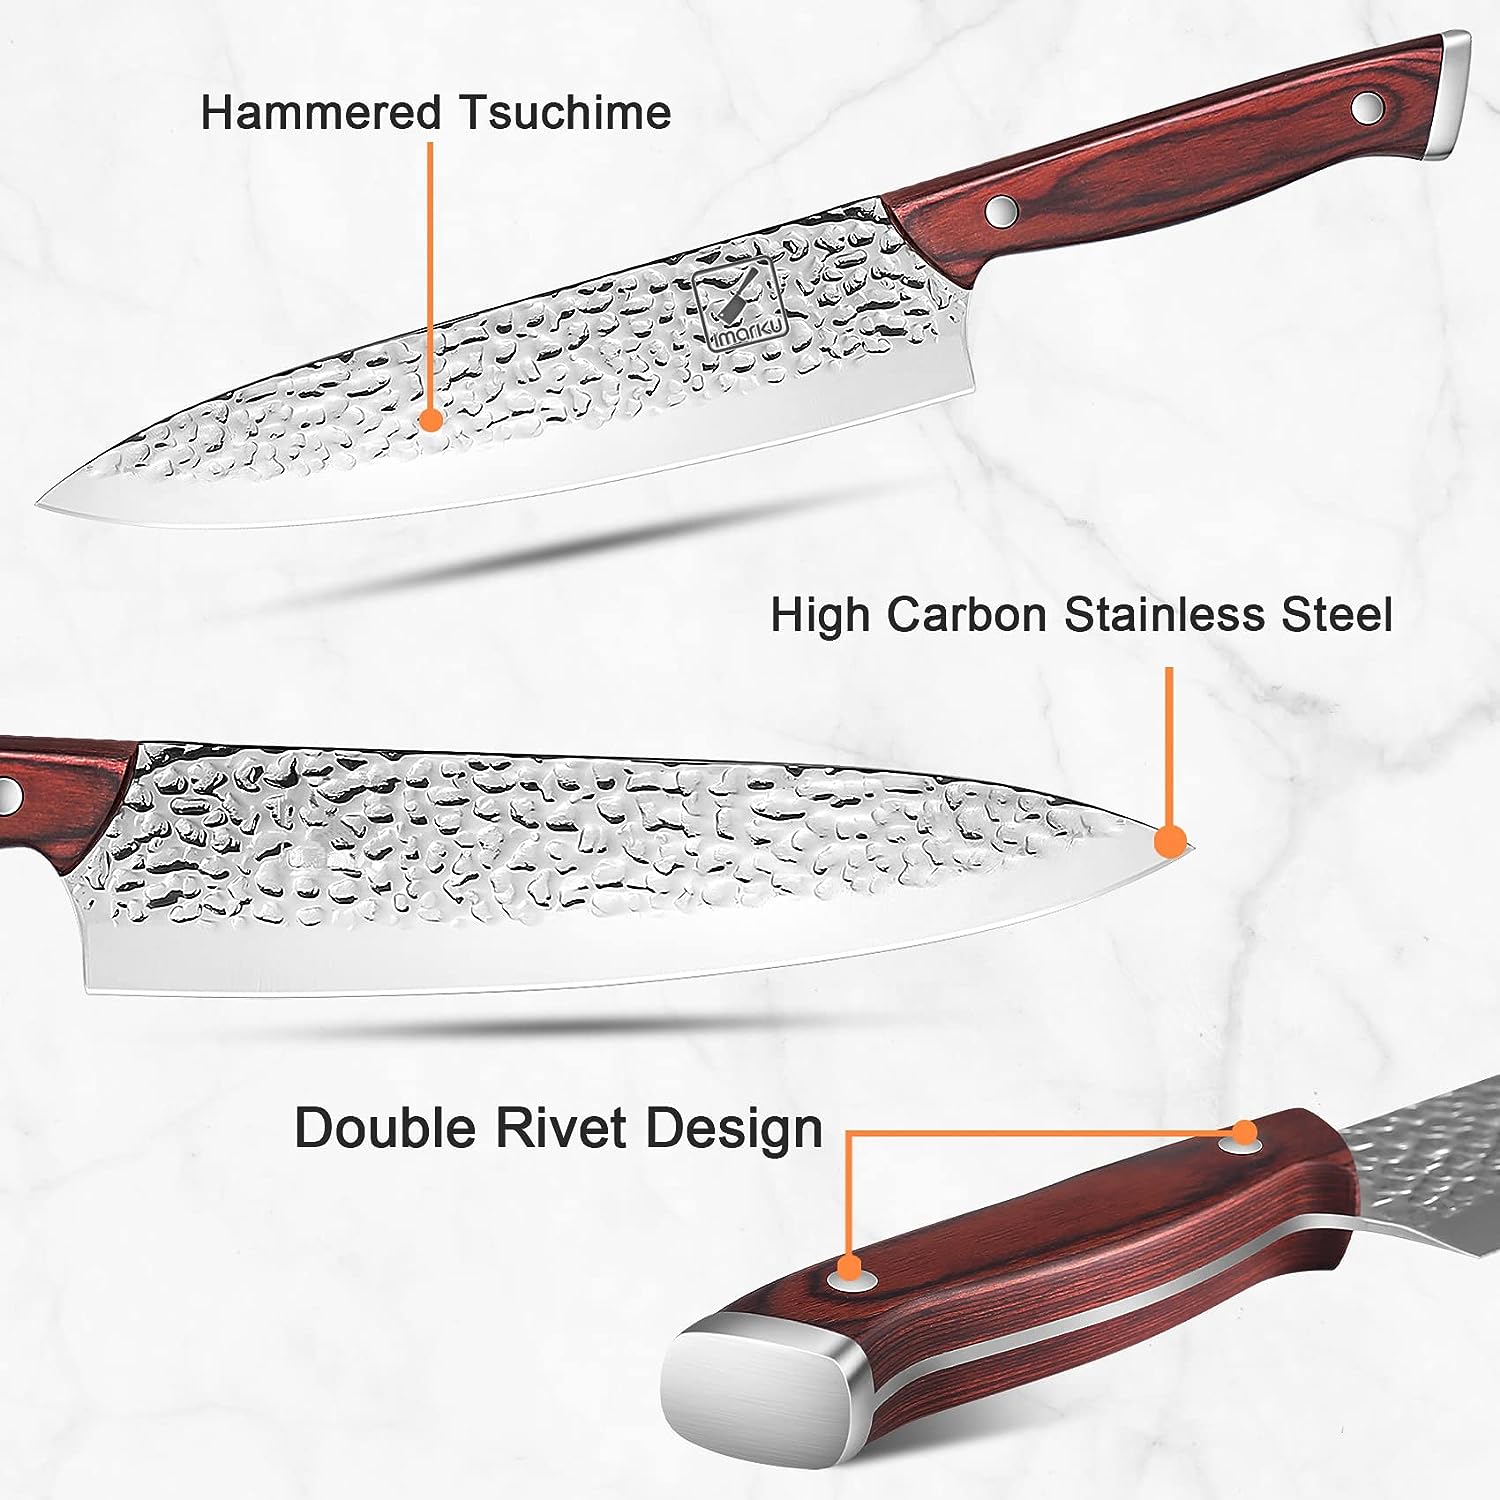 16 ピース ナイフ ブロック セット |打たれたデザイン |イマーク